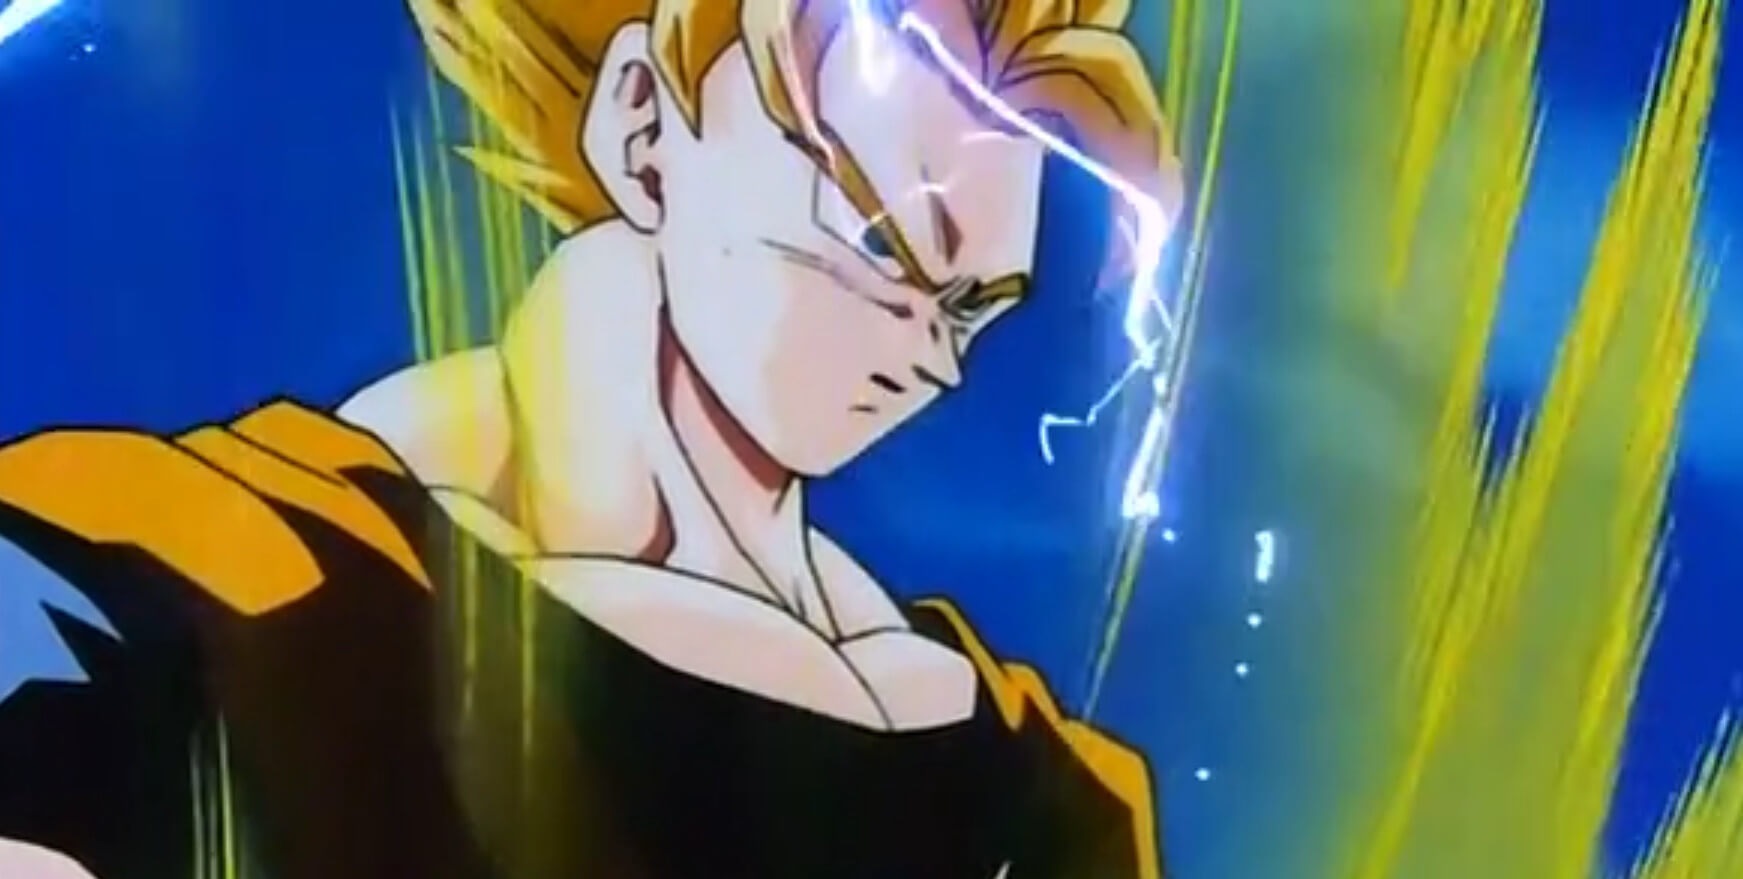 Goku in Super Saiyan 2.